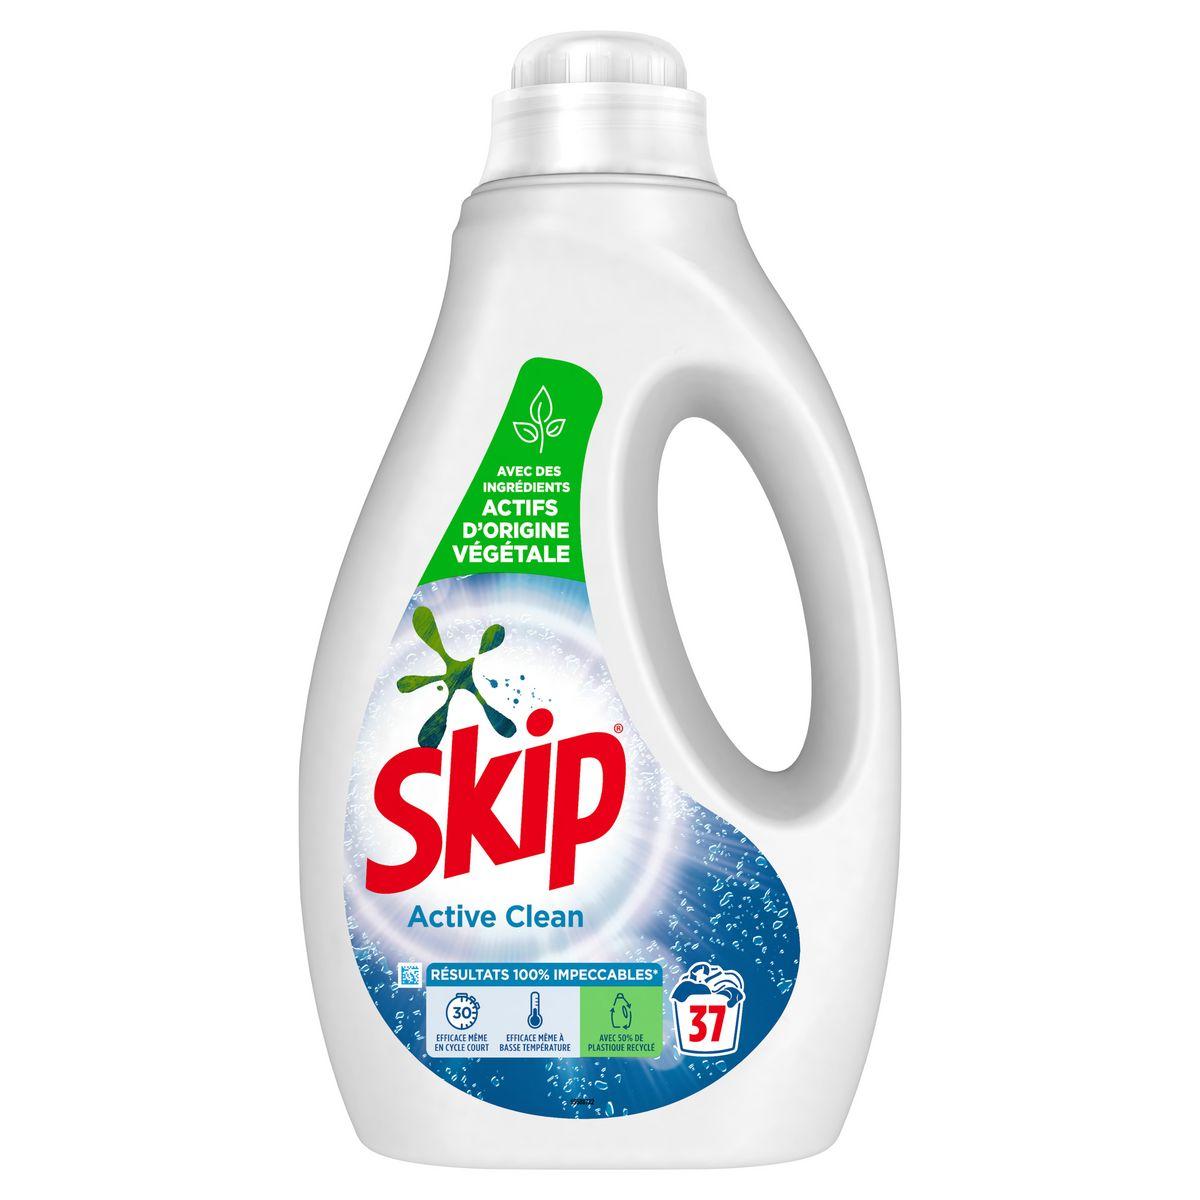 Skip Lessive Liquide en Capsules 3 en 1 Active Clean sans